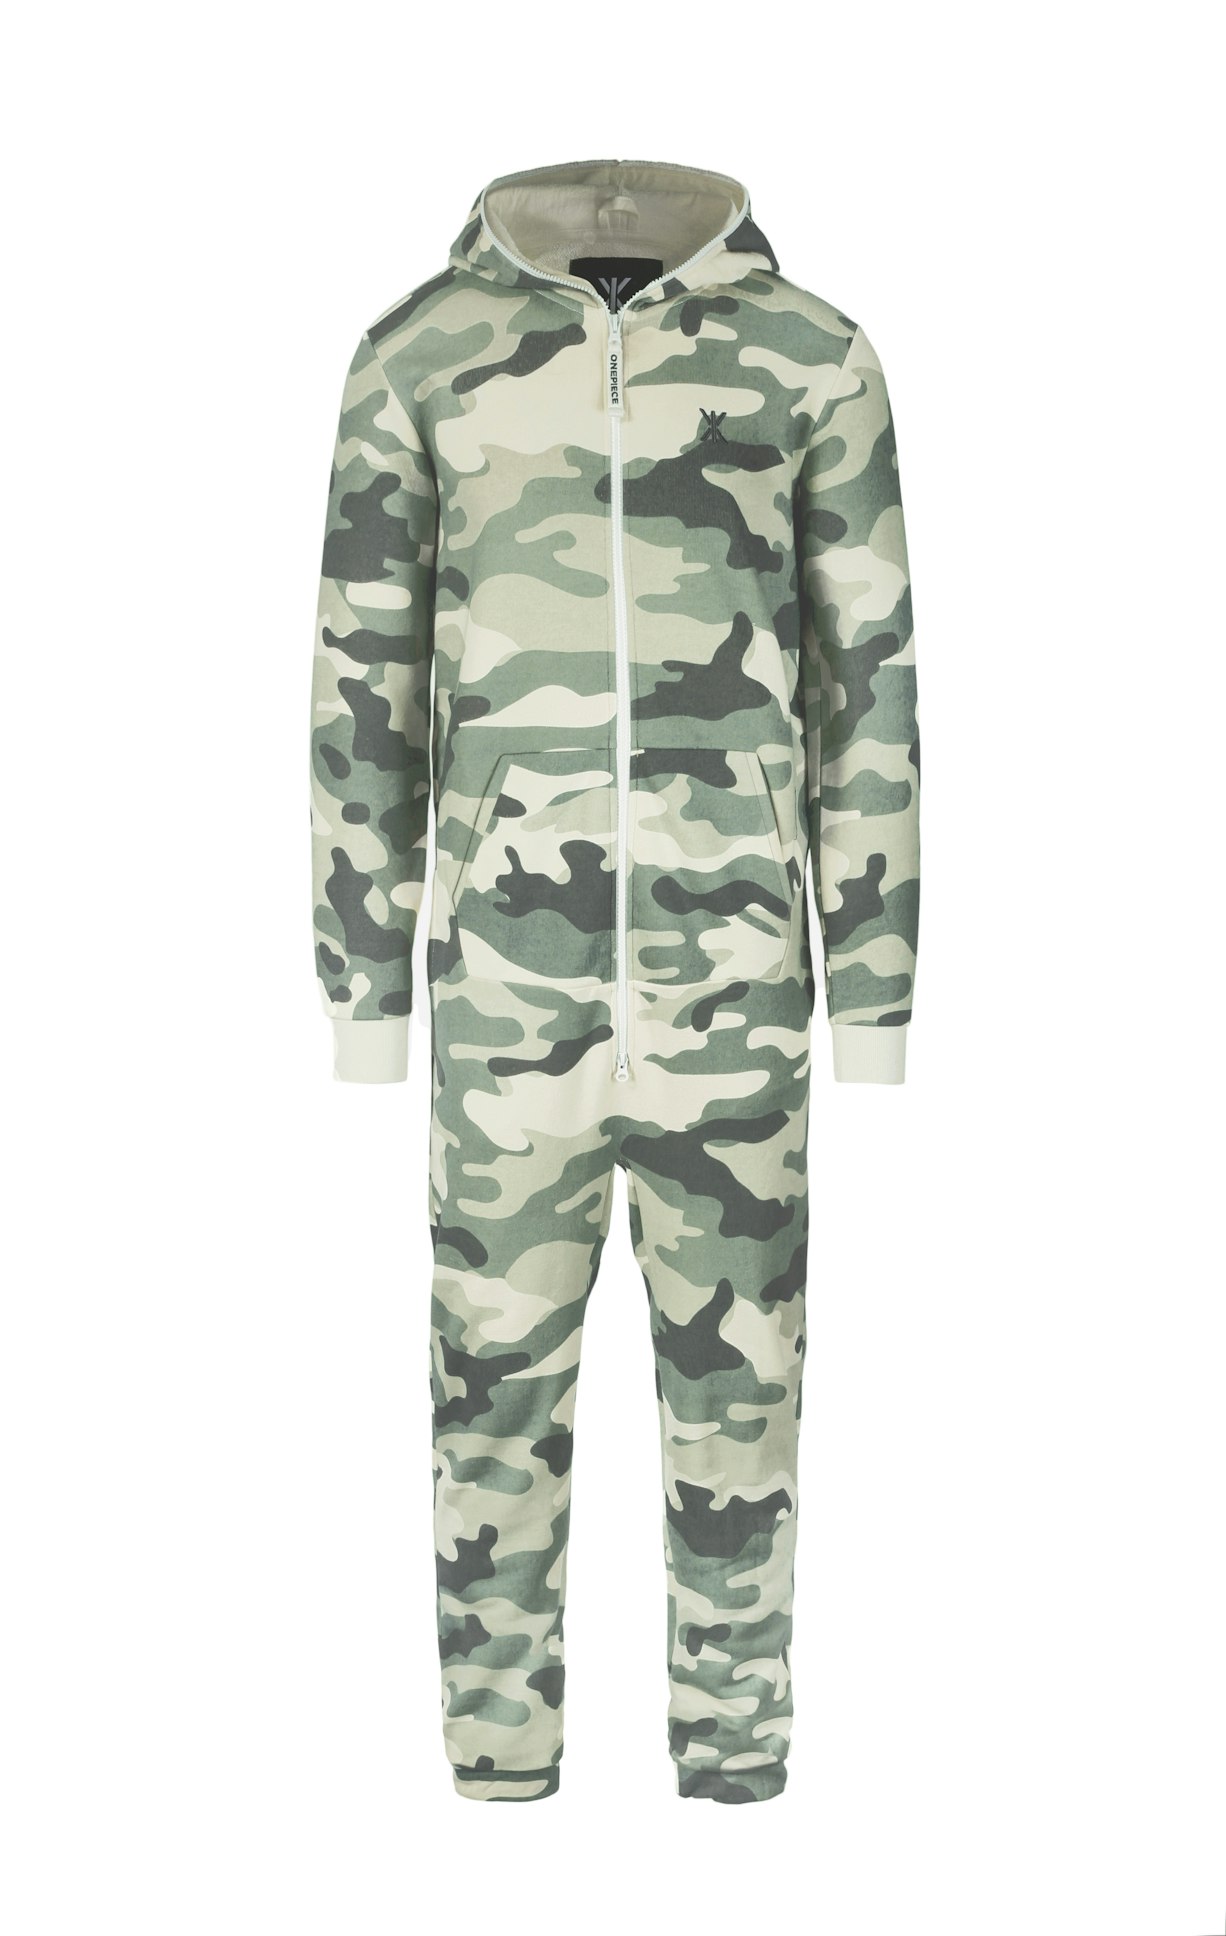 Original Camo Jumpsuit Camouflage